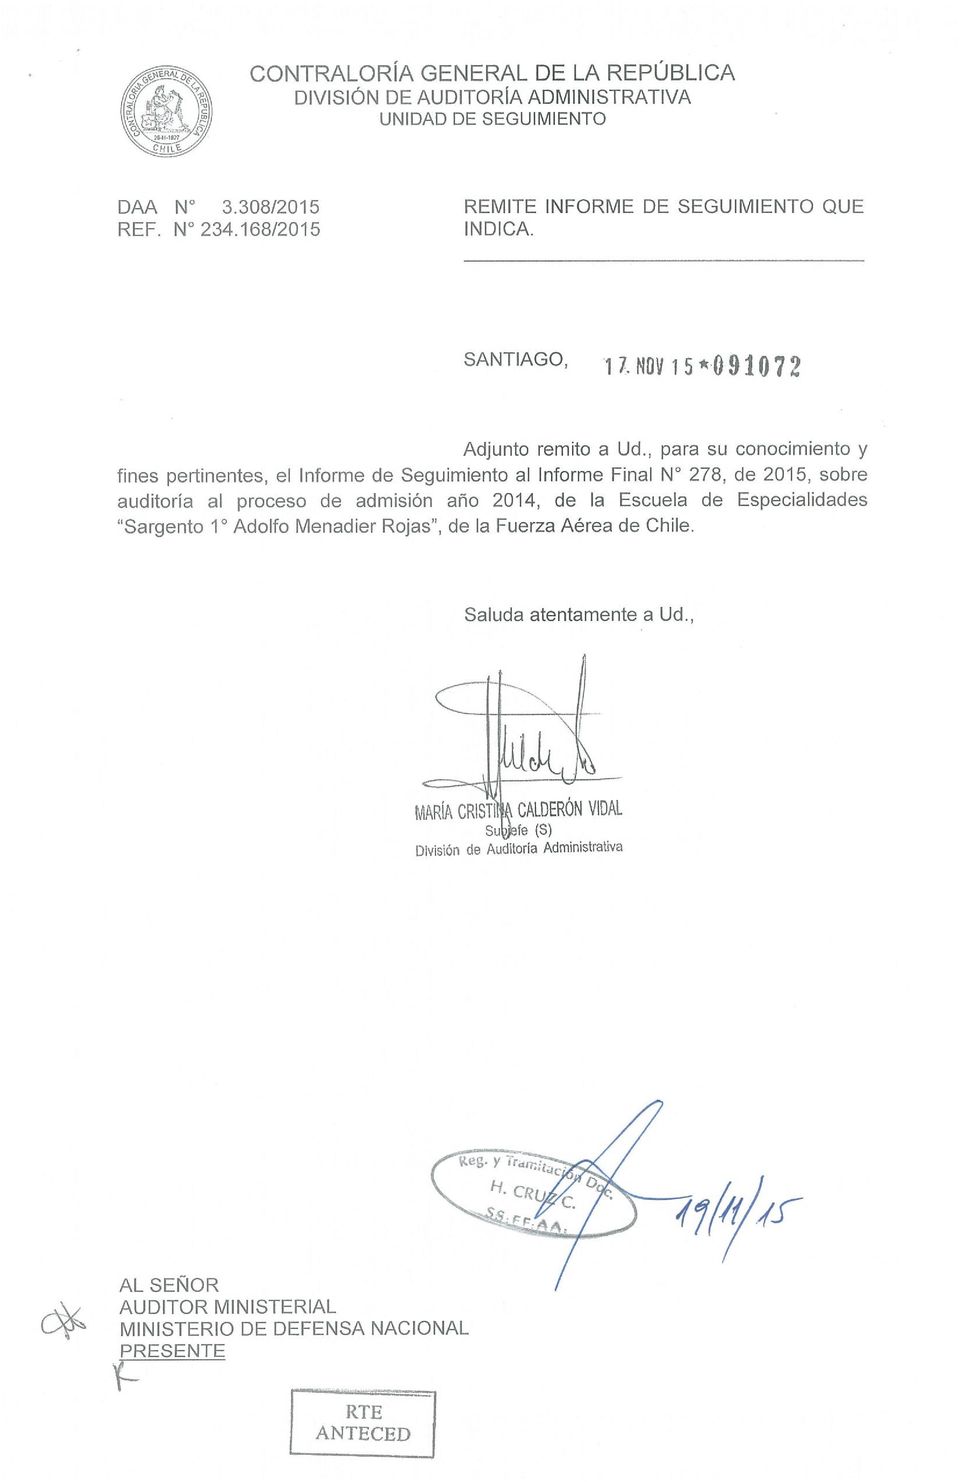 al proceso de admisión año 2014, de la Escuela de Especialidades Sargento 1 Adolfo Menadier Rojas, de la Fuerza Aérea